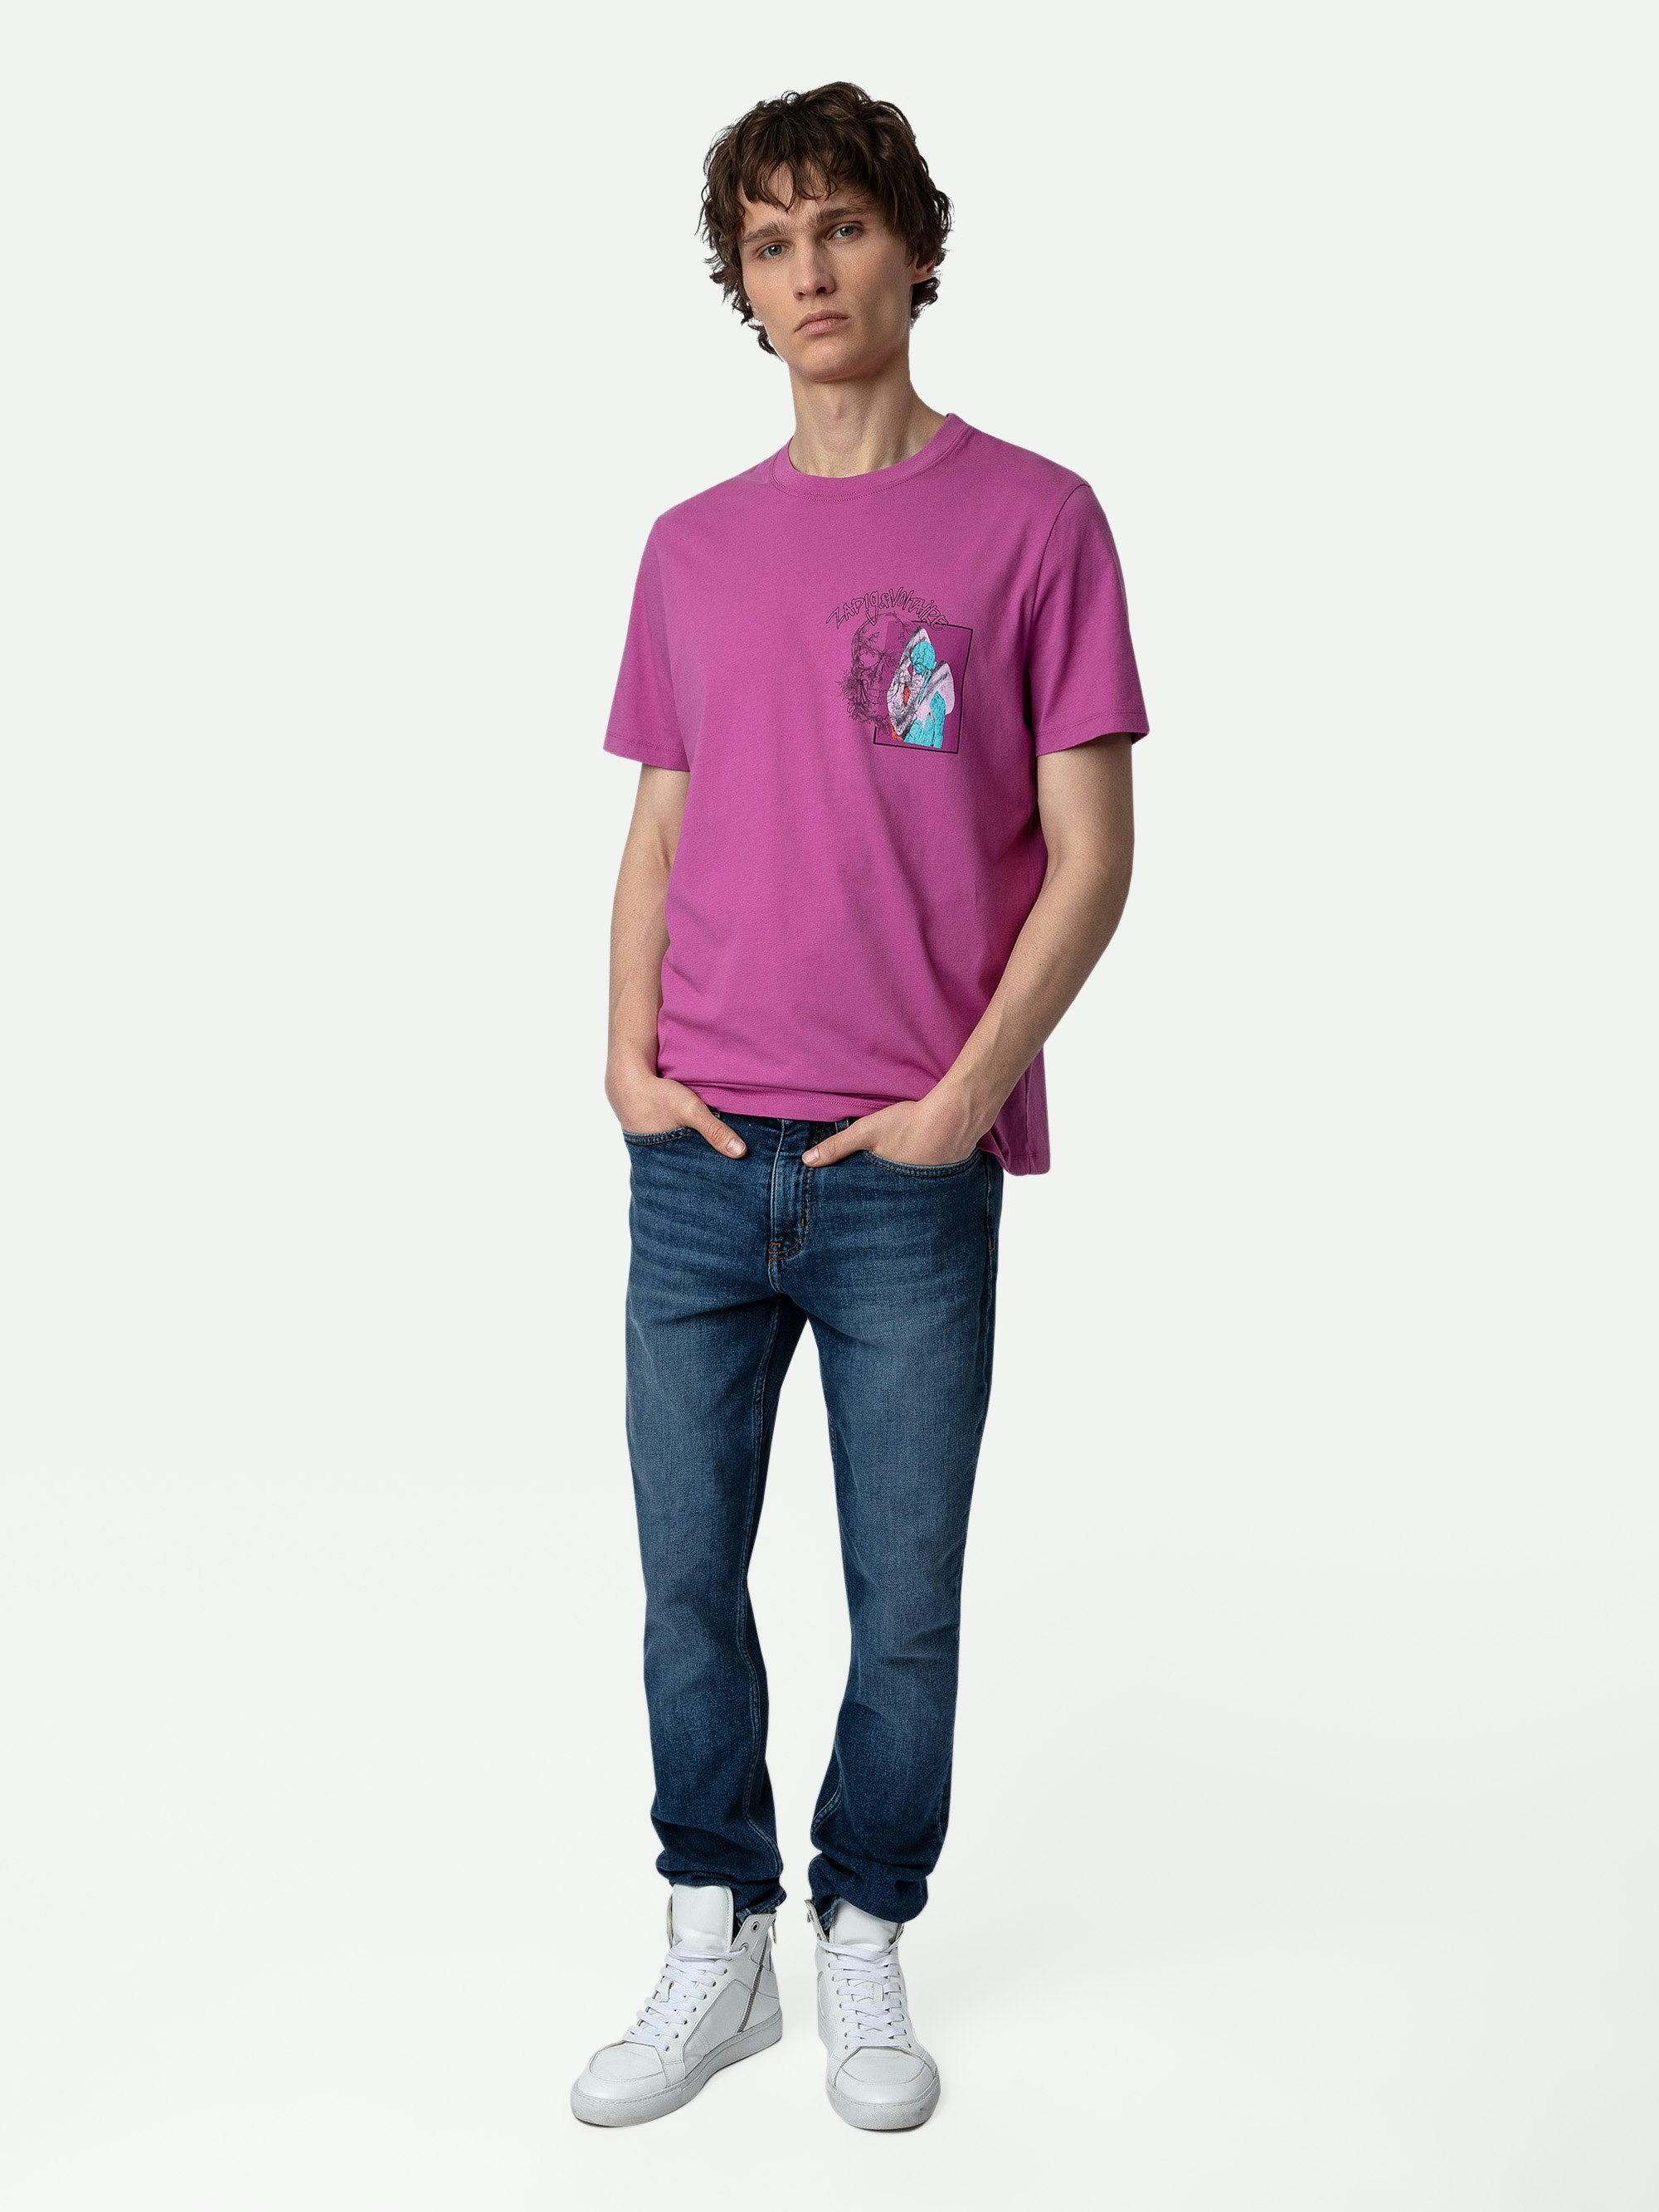 T-Shirt Ted Fotoprint - T-Shirt aus Baumwolle in Fuchsia mit Graffiti-Fotoprint mit Totenkopf.